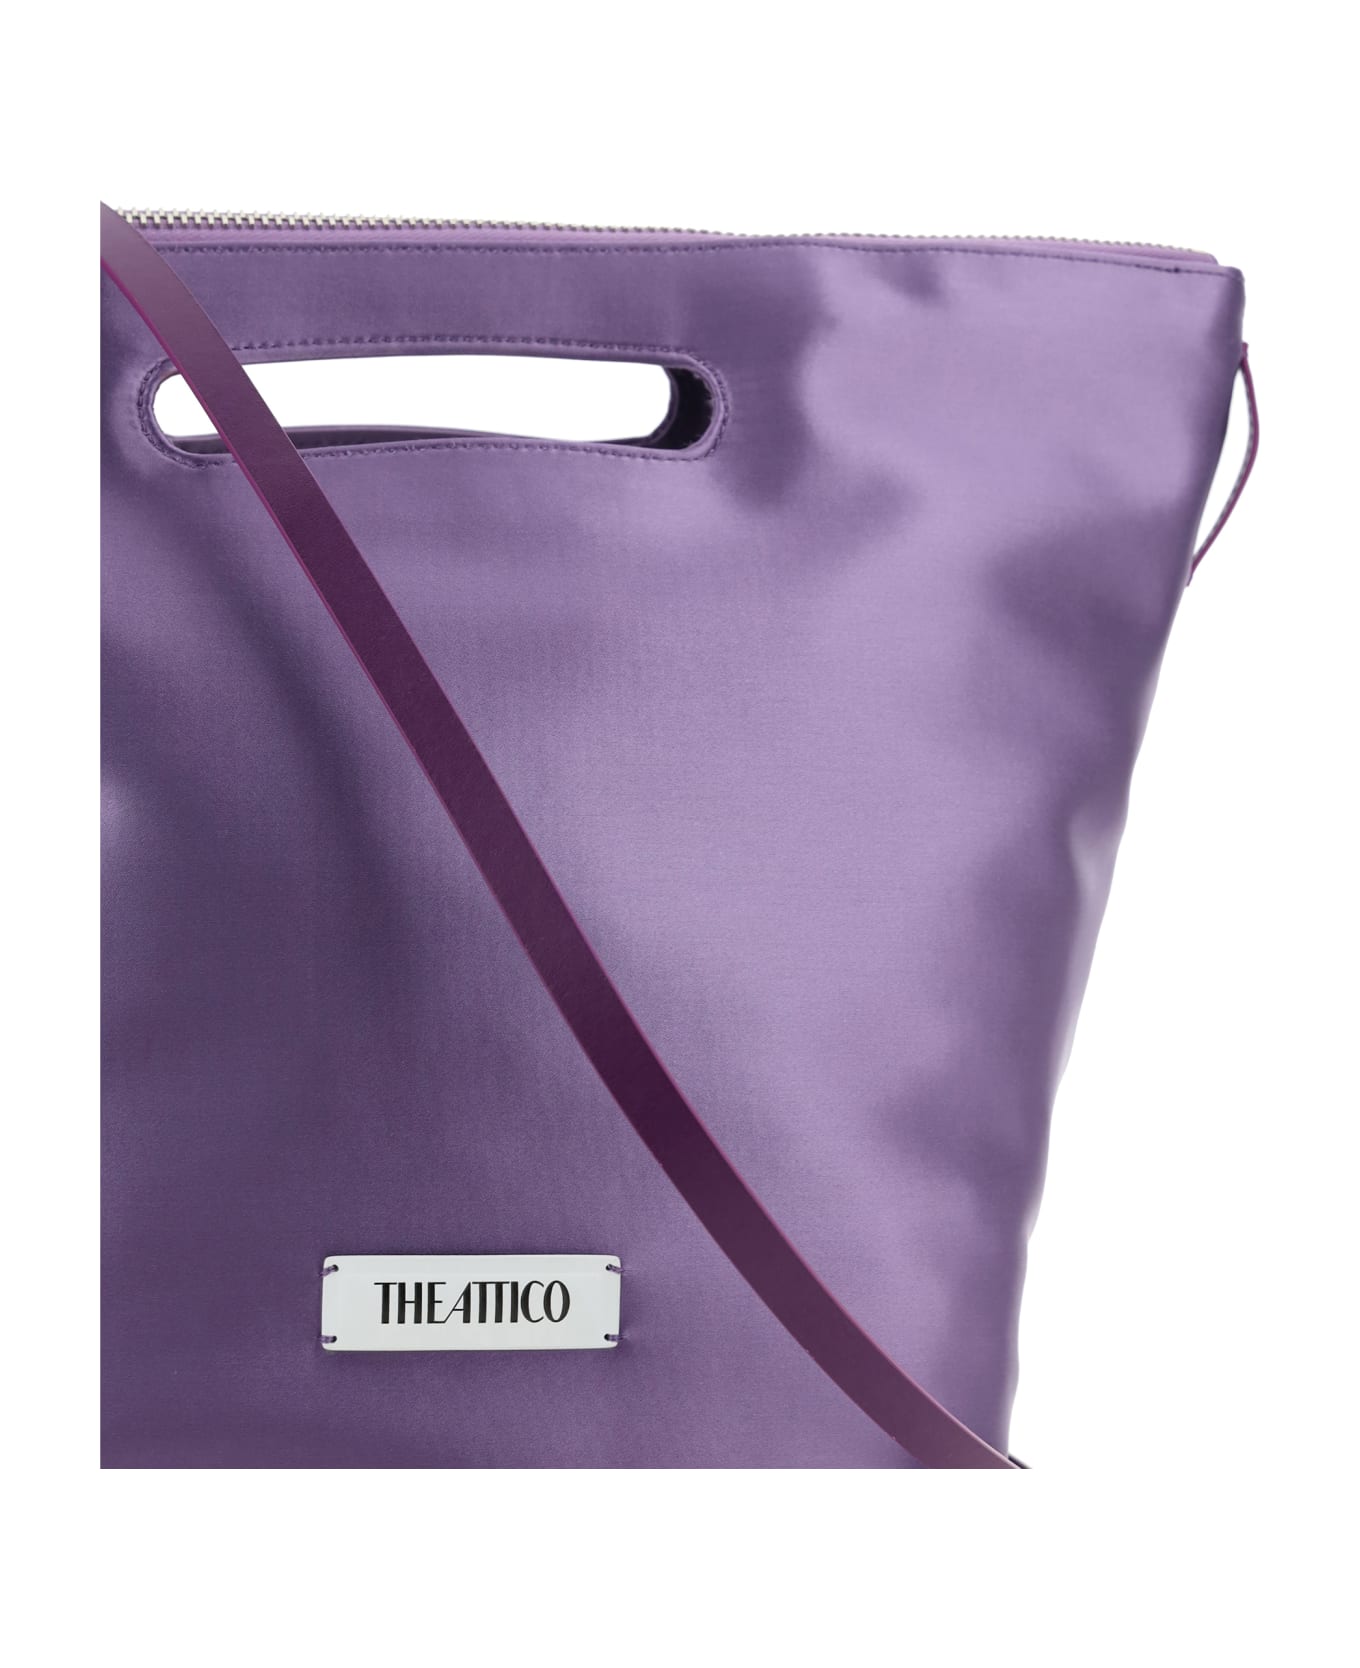 The Attico Via Dei Giardini 30 Handbag - Lilac